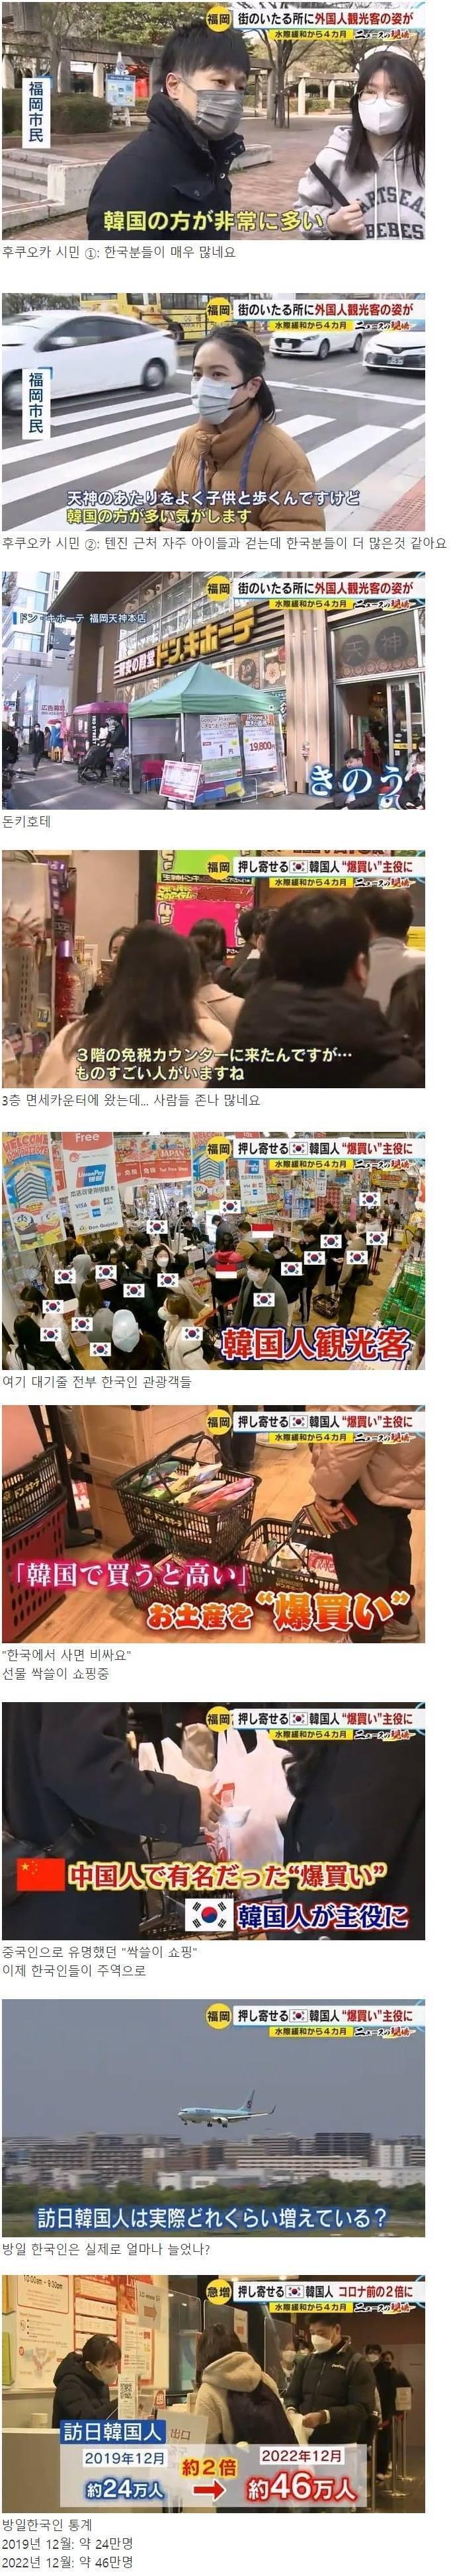 일본방송에서 말하는 후쿠오카를 점령한 한국인들